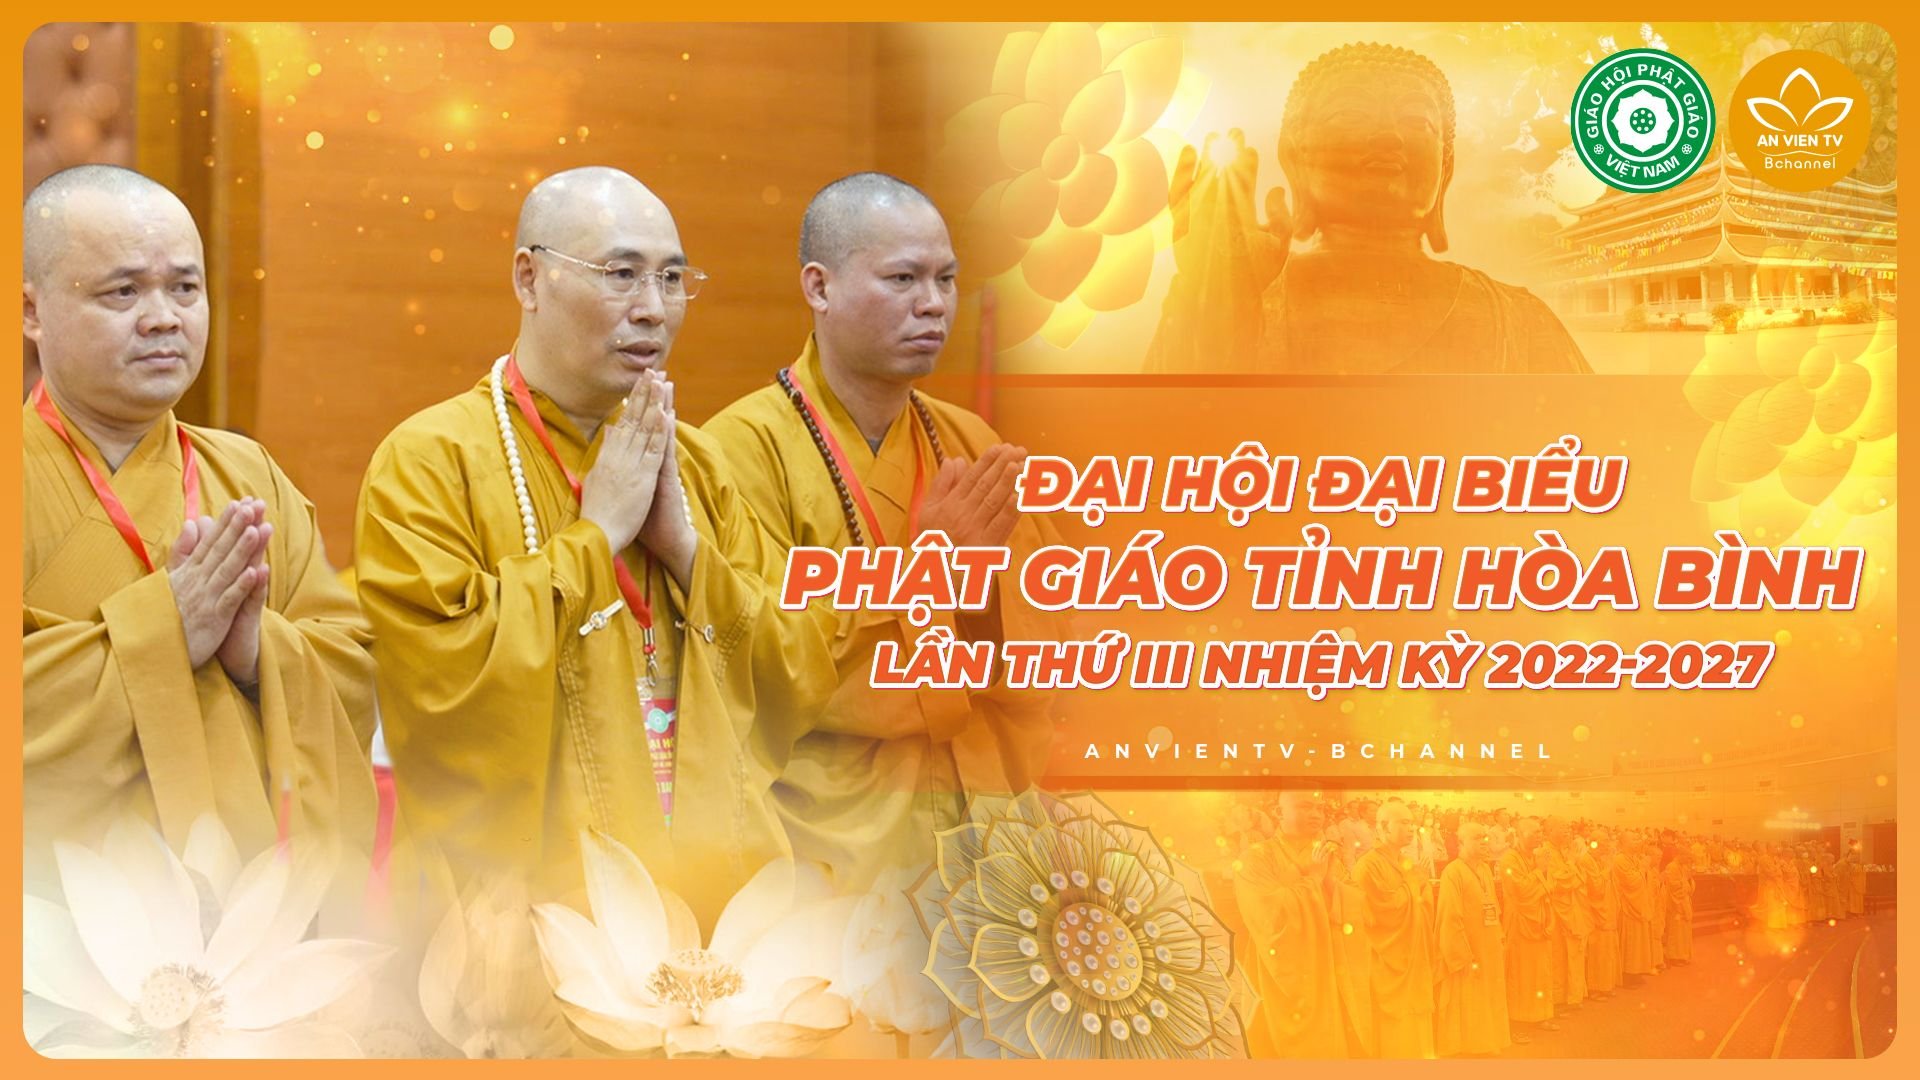 Long trọng tổ chức Đại hội Đại biểu Phật giáo tỉnh Hòa Bình lần thứ III - nhiệm kỳ 2022-2027